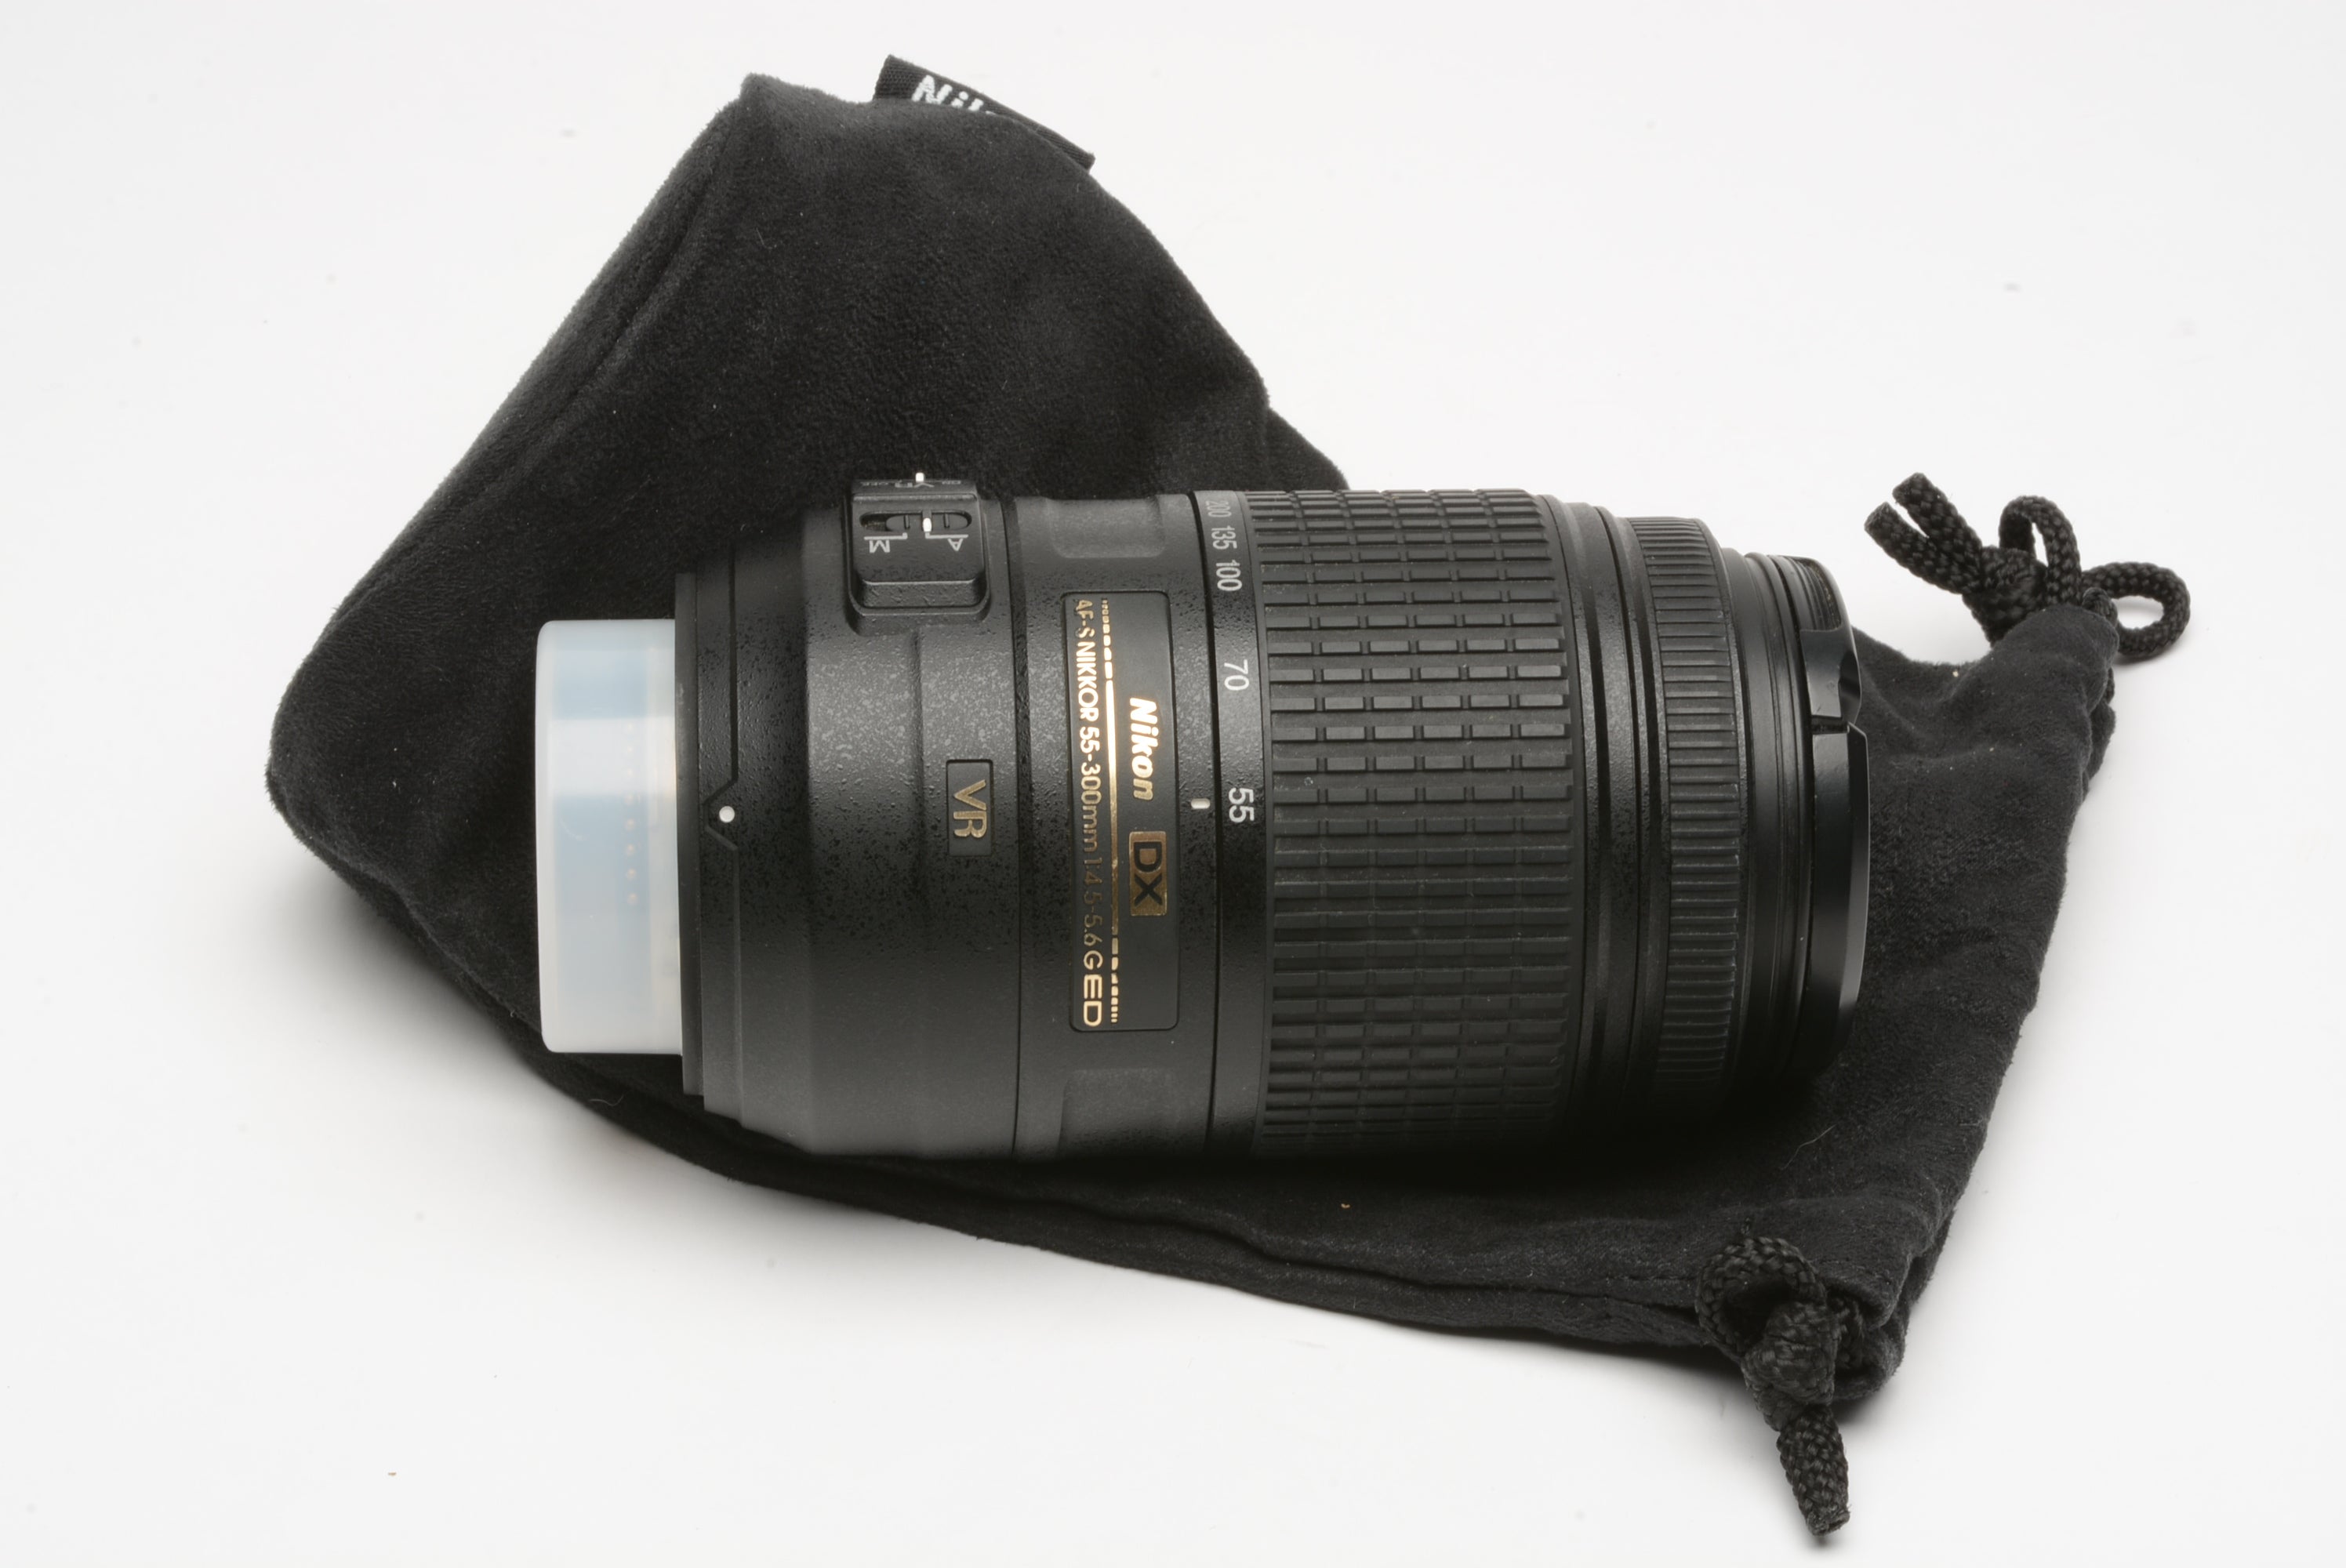 Nikon ED AF-S VR Nikkor 55-300mm f4.5-5.6 G ED FX lens, caps